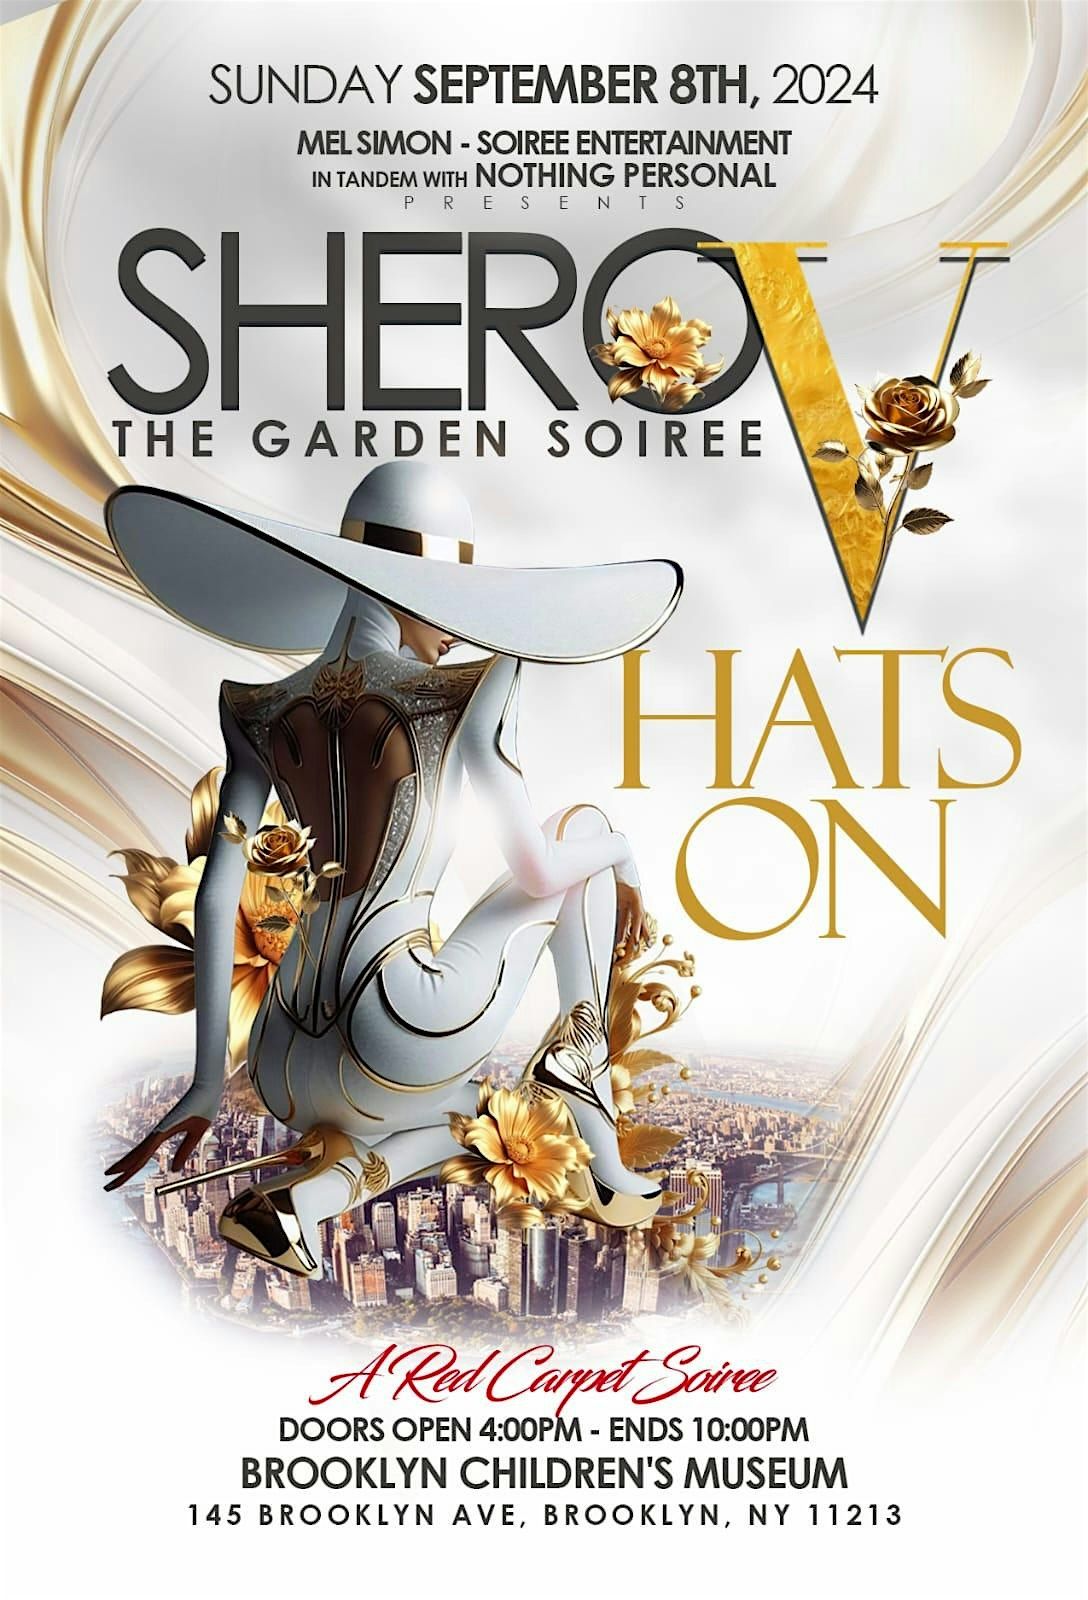 SHERO V The Garden Soiree - Sunday September 8, 2024